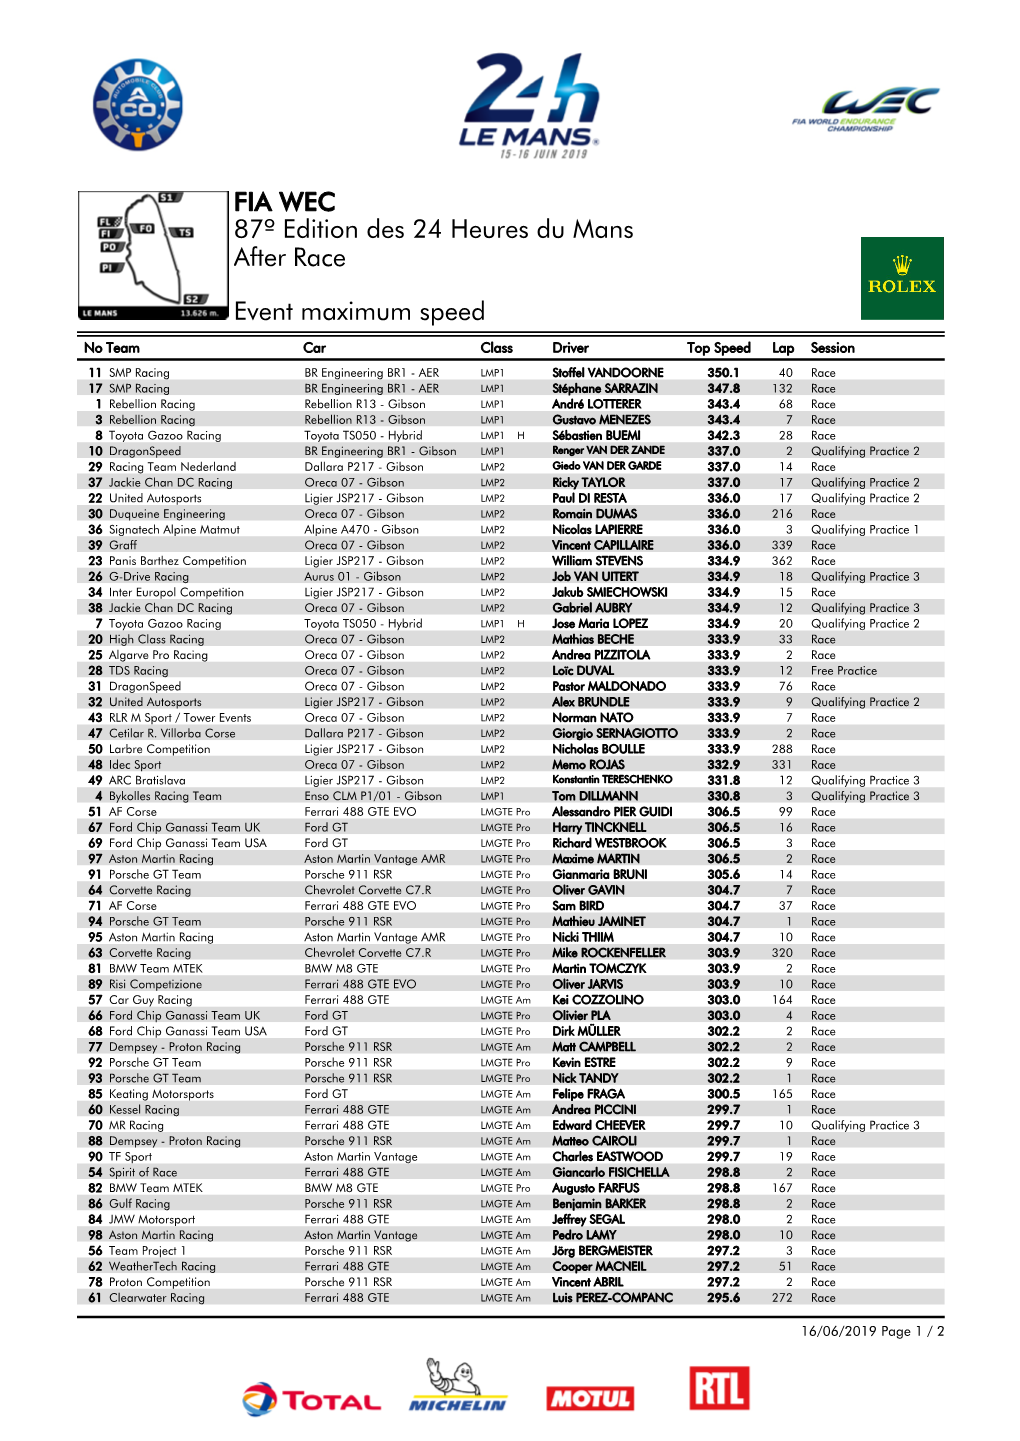 Event Maximum Speed Race 87º Edition Des 24 Heures Du Mans FIA WEC After